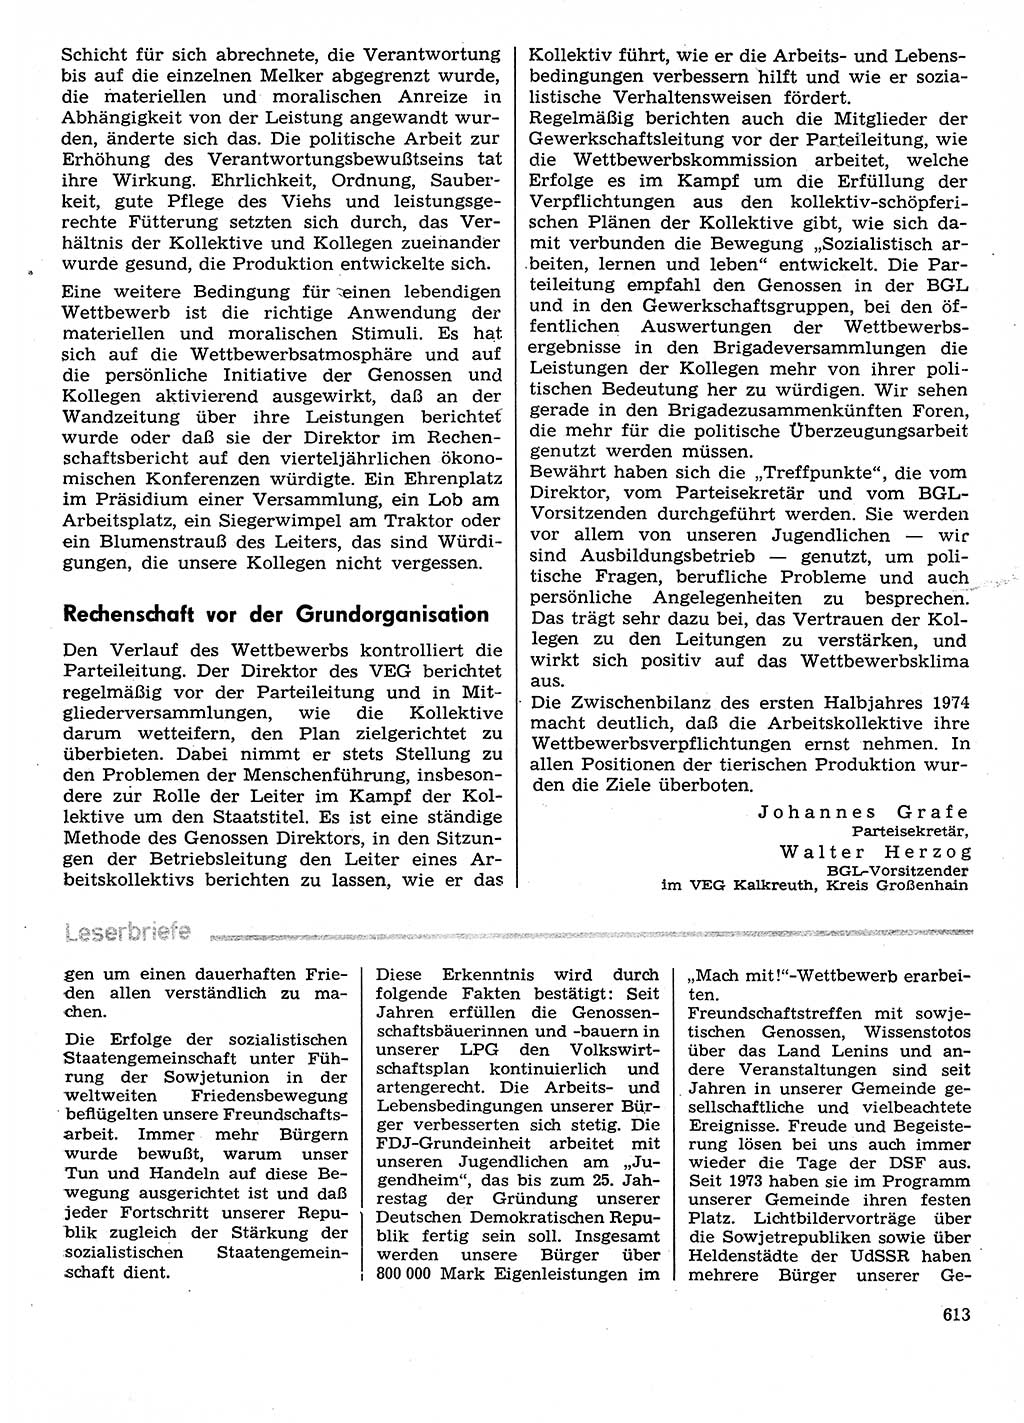 Neuer Weg (NW), Organ des Zentralkomitees (ZK) der SED (Sozialistische Einheitspartei Deutschlands) für Fragen des Parteilebens, 29. Jahrgang [Deutsche Demokratische Republik (DDR)] 1974, Seite 613 (NW ZK SED DDR 1974, S. 613)